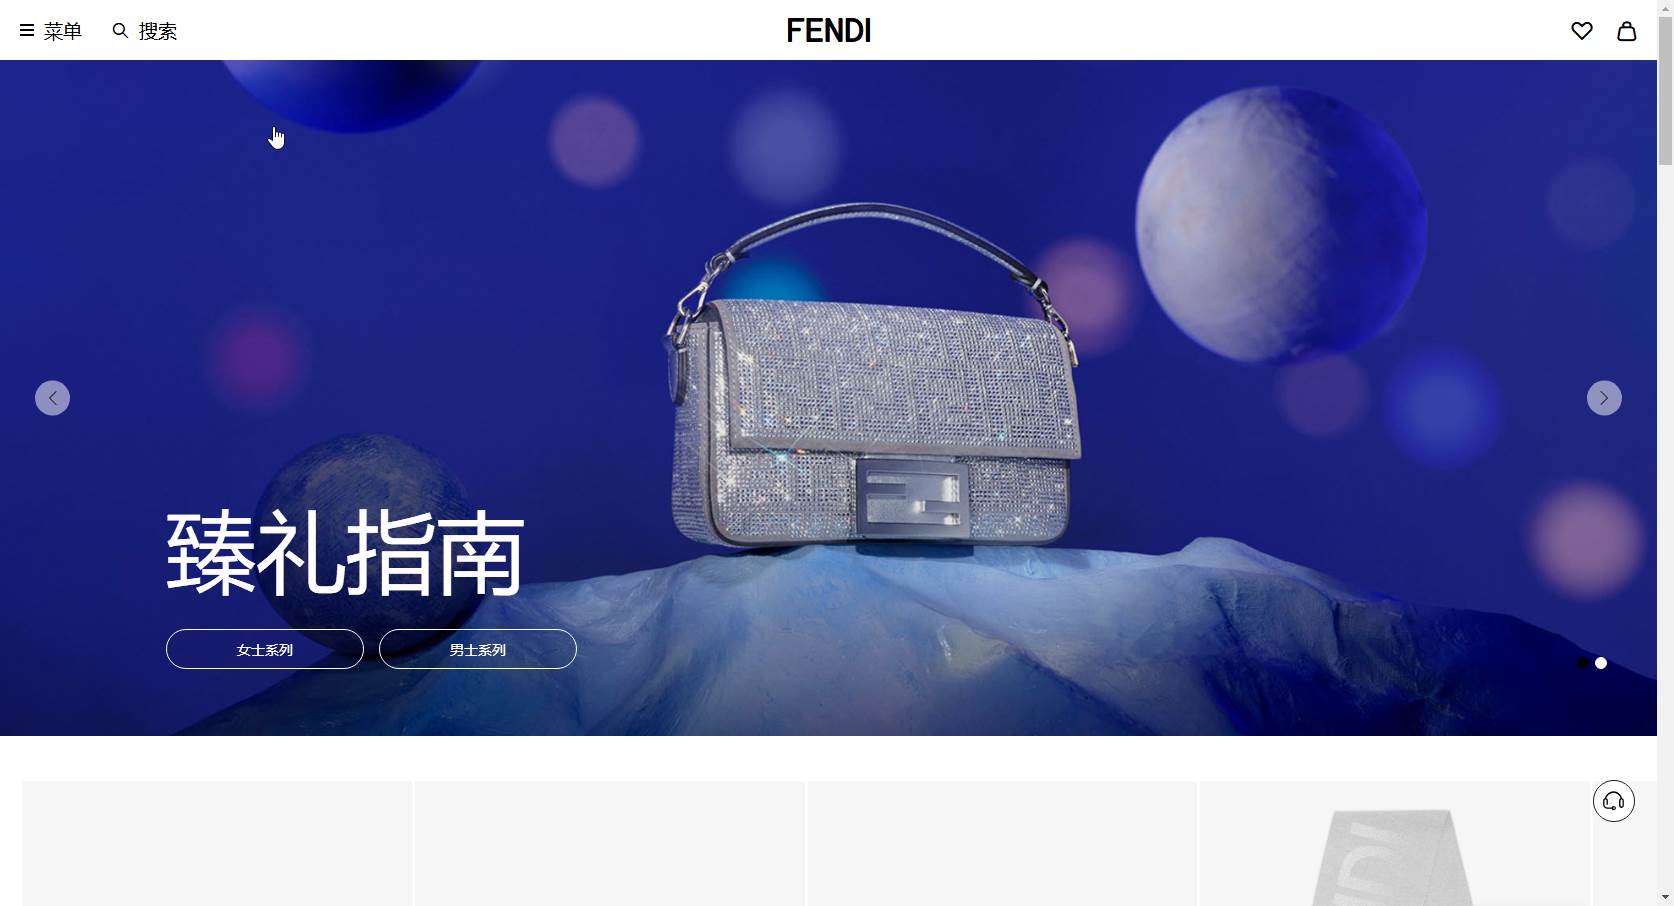 FENDI芬迪中国官网